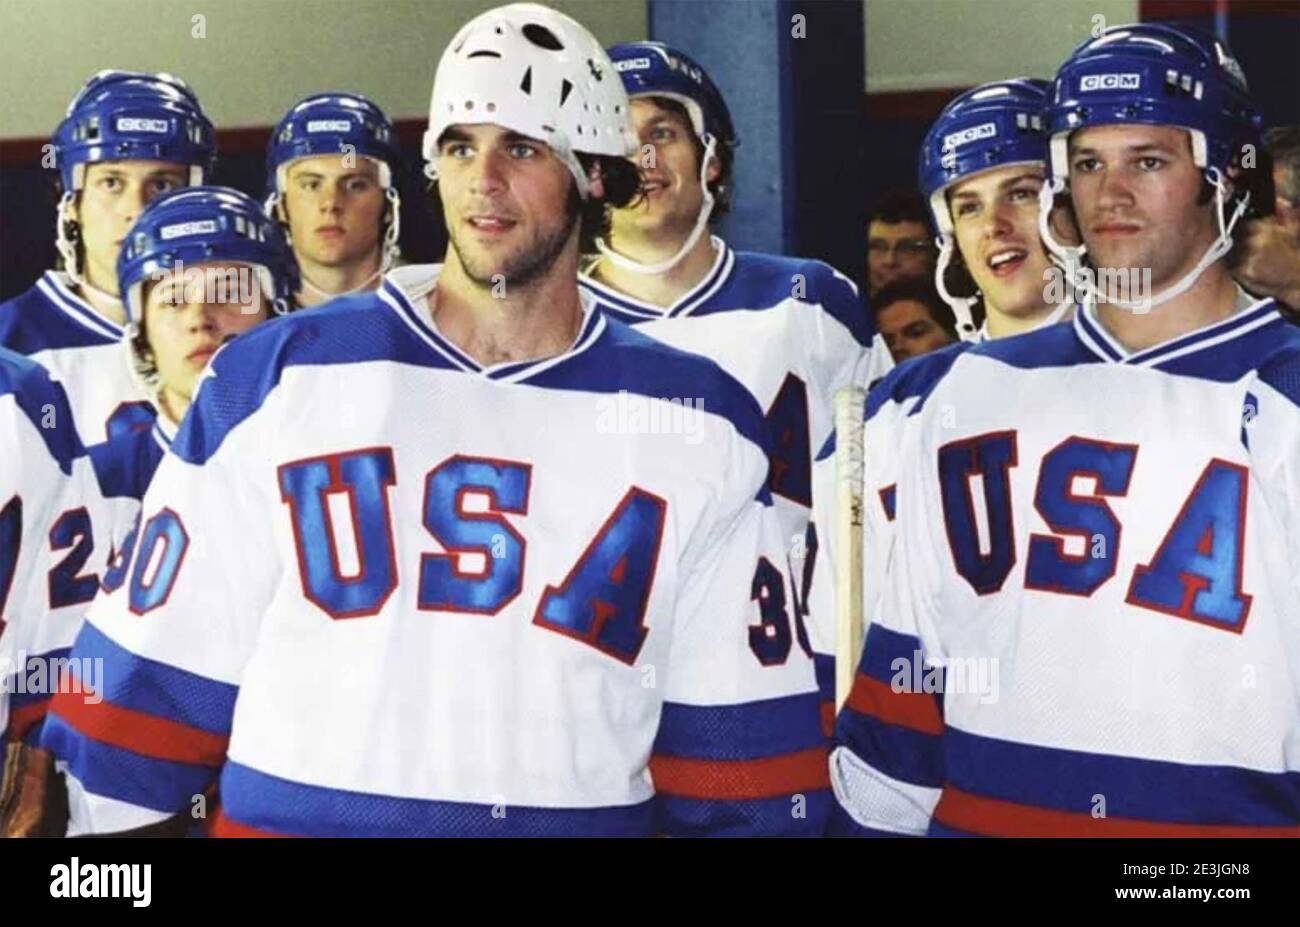 MIRACLE 2004 Buena Vista immagini film sugli uomini degli Stati Uniti hockey su ghiaccio tesm vincere la medaglia d'oro al 1980 Olimpiadi invernali Foto Stock